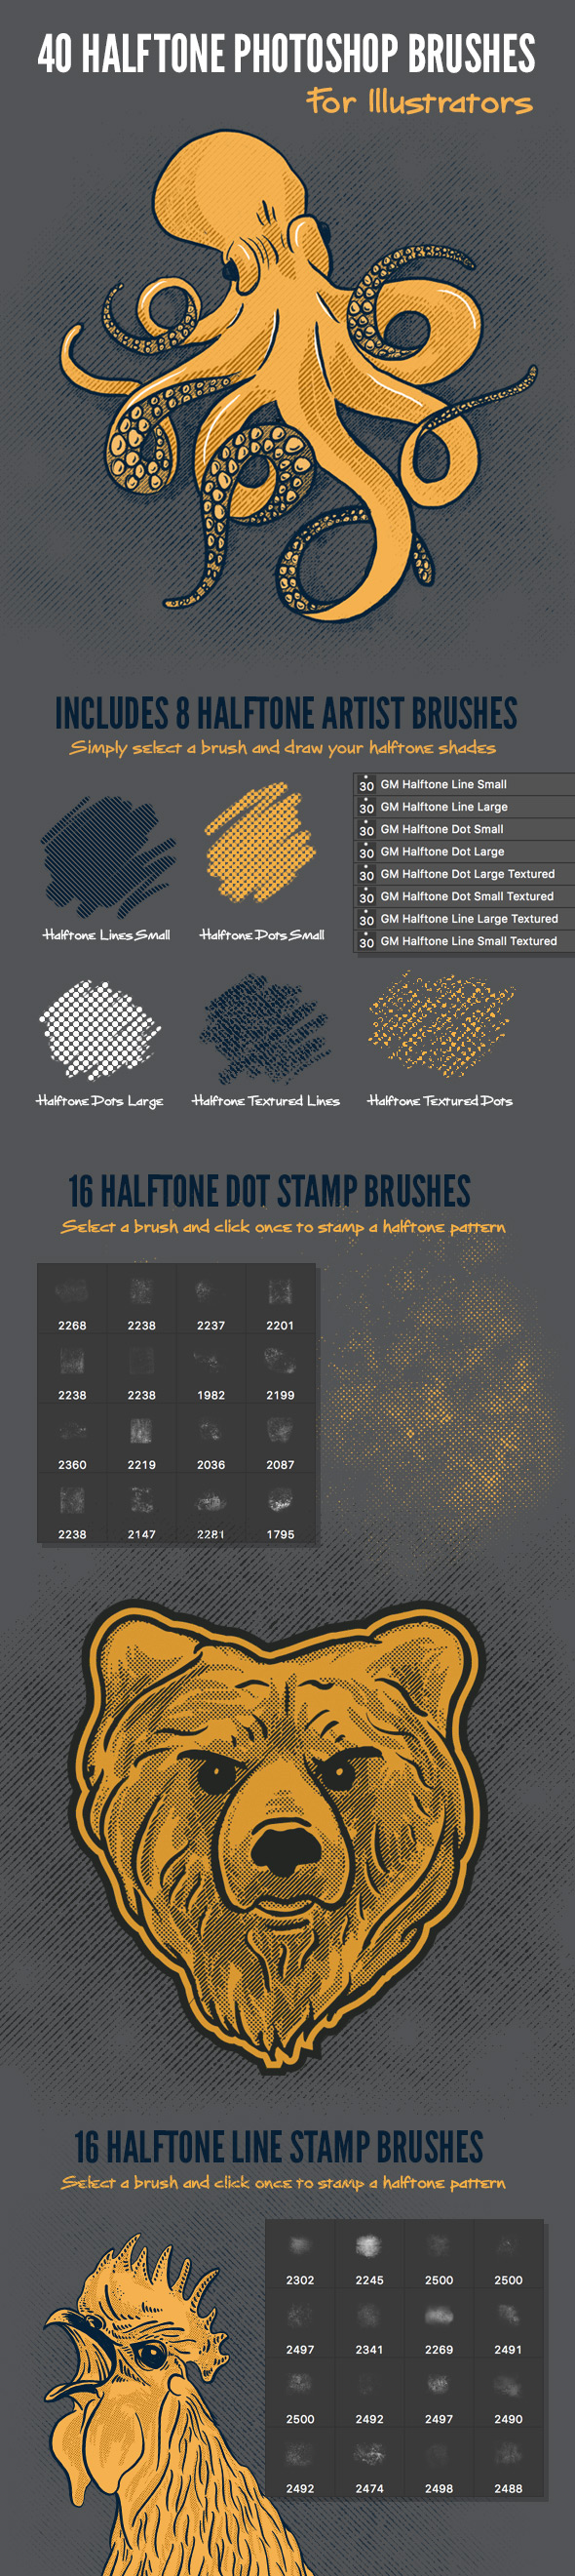 40 Halftone Illustration Brushes for Photoshop